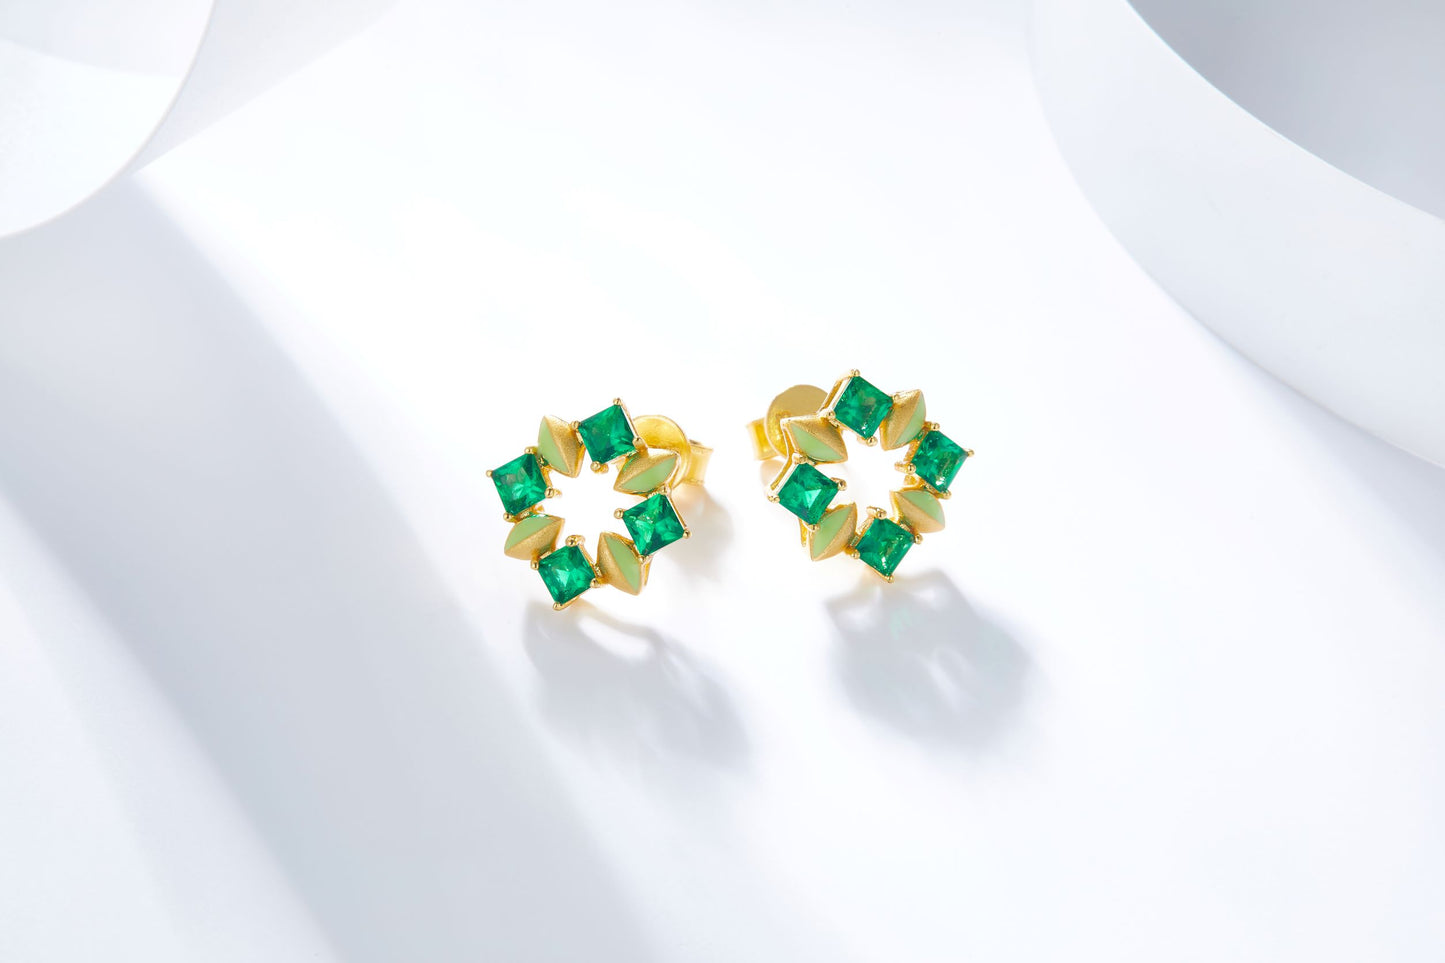 Emerald Colour Kaleidoscope Enamel Studs Earrings for Women